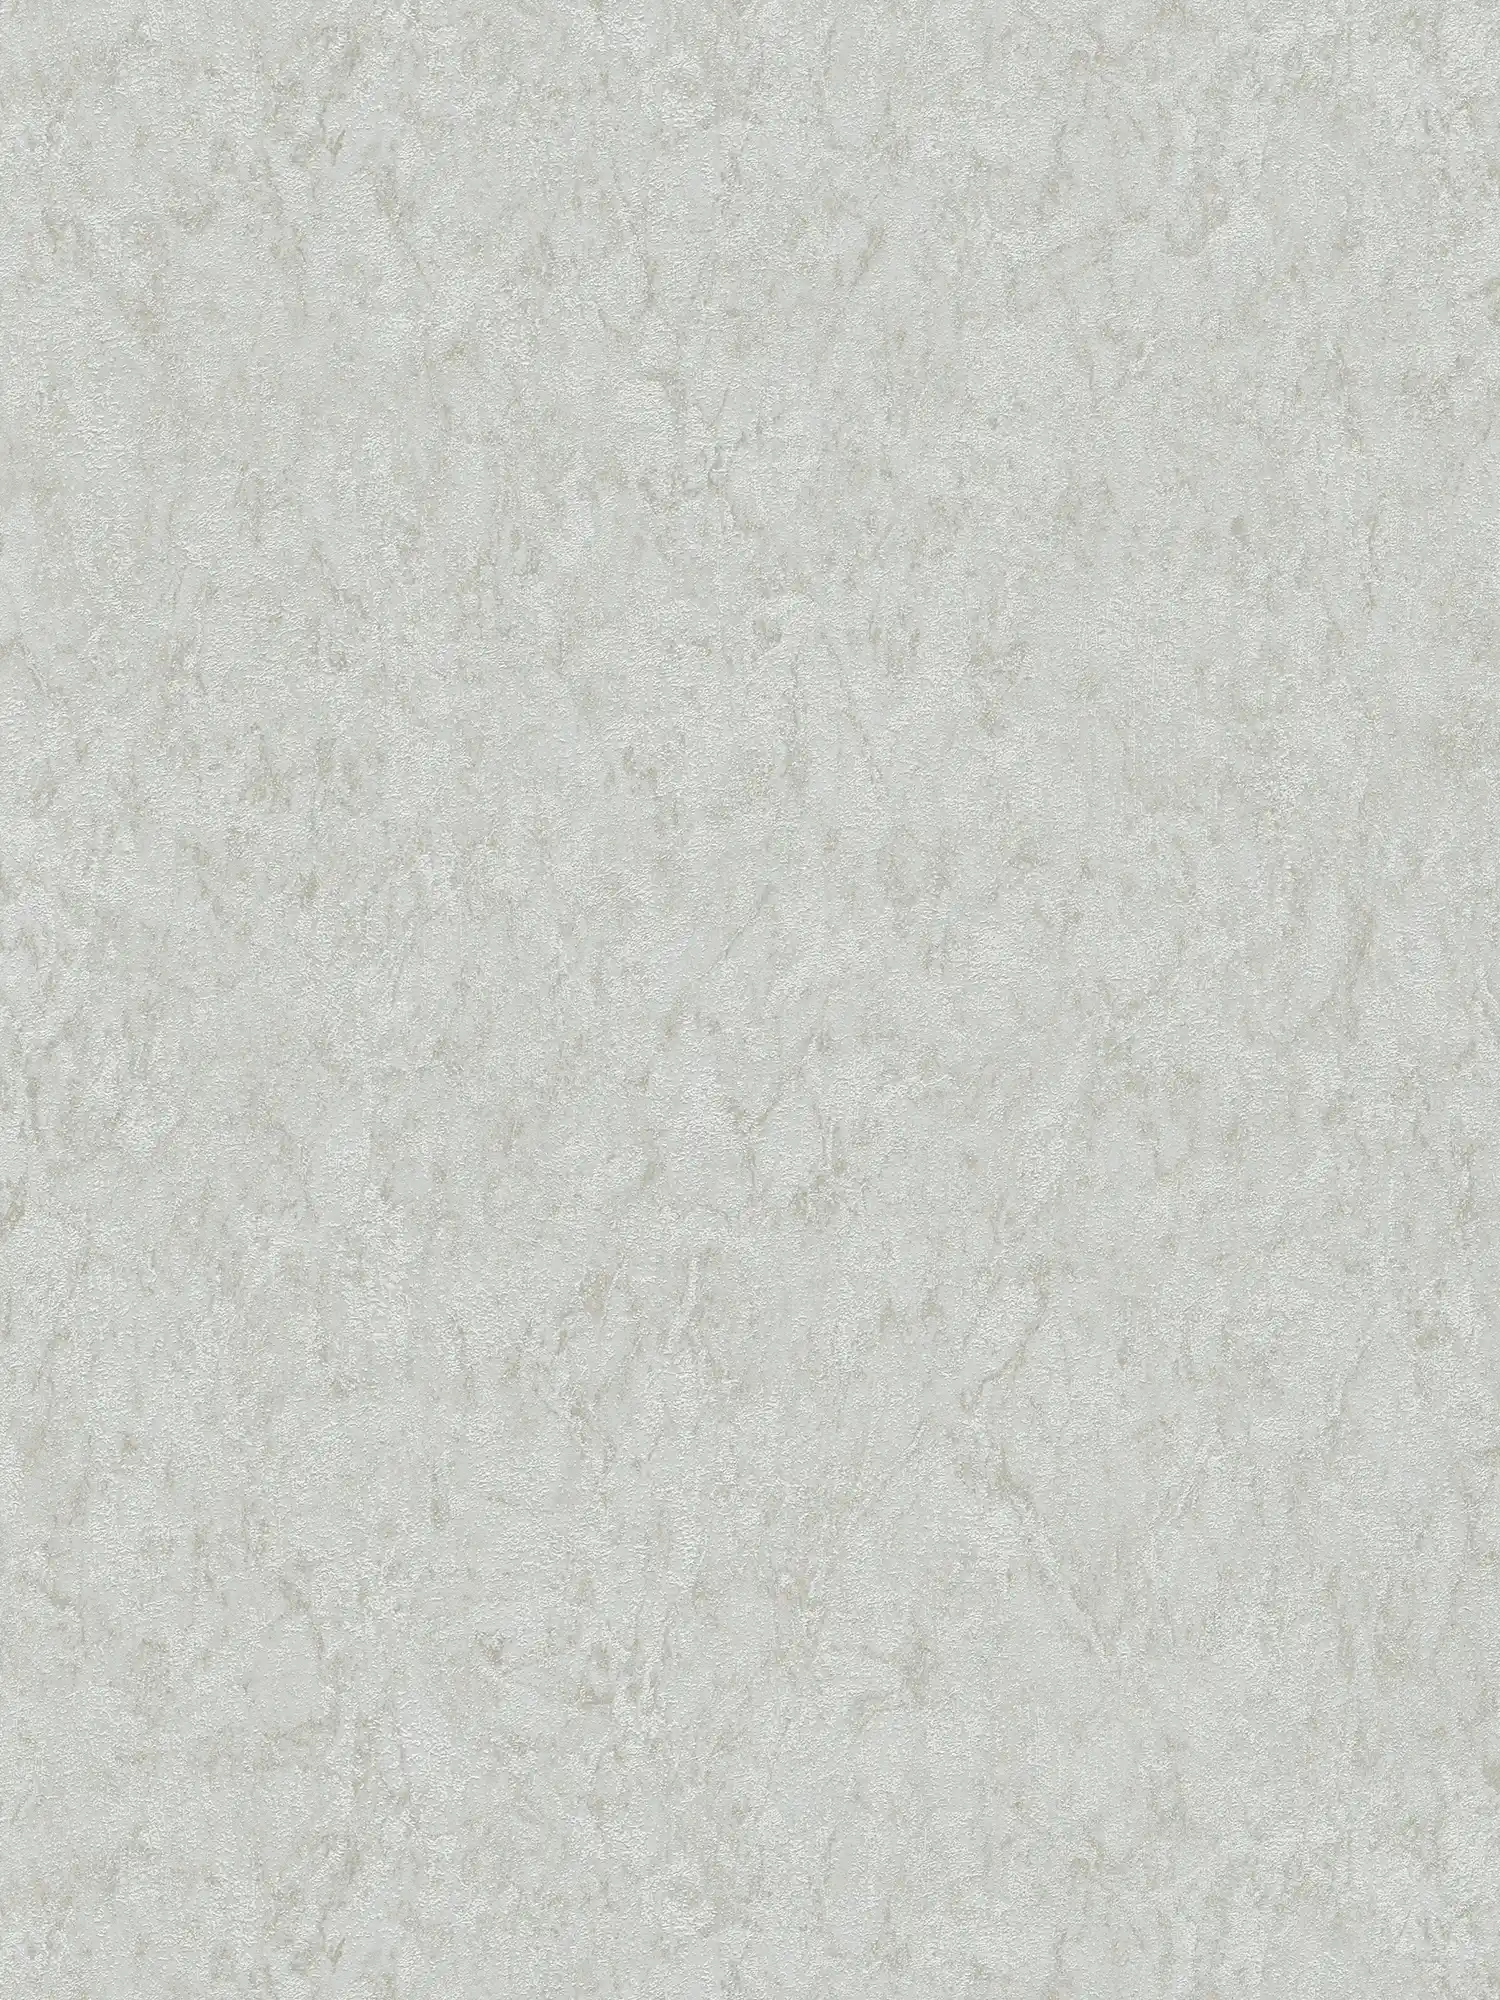 Carta da parati unitaria con effetto texture e disegno screziato - grigio, beige
